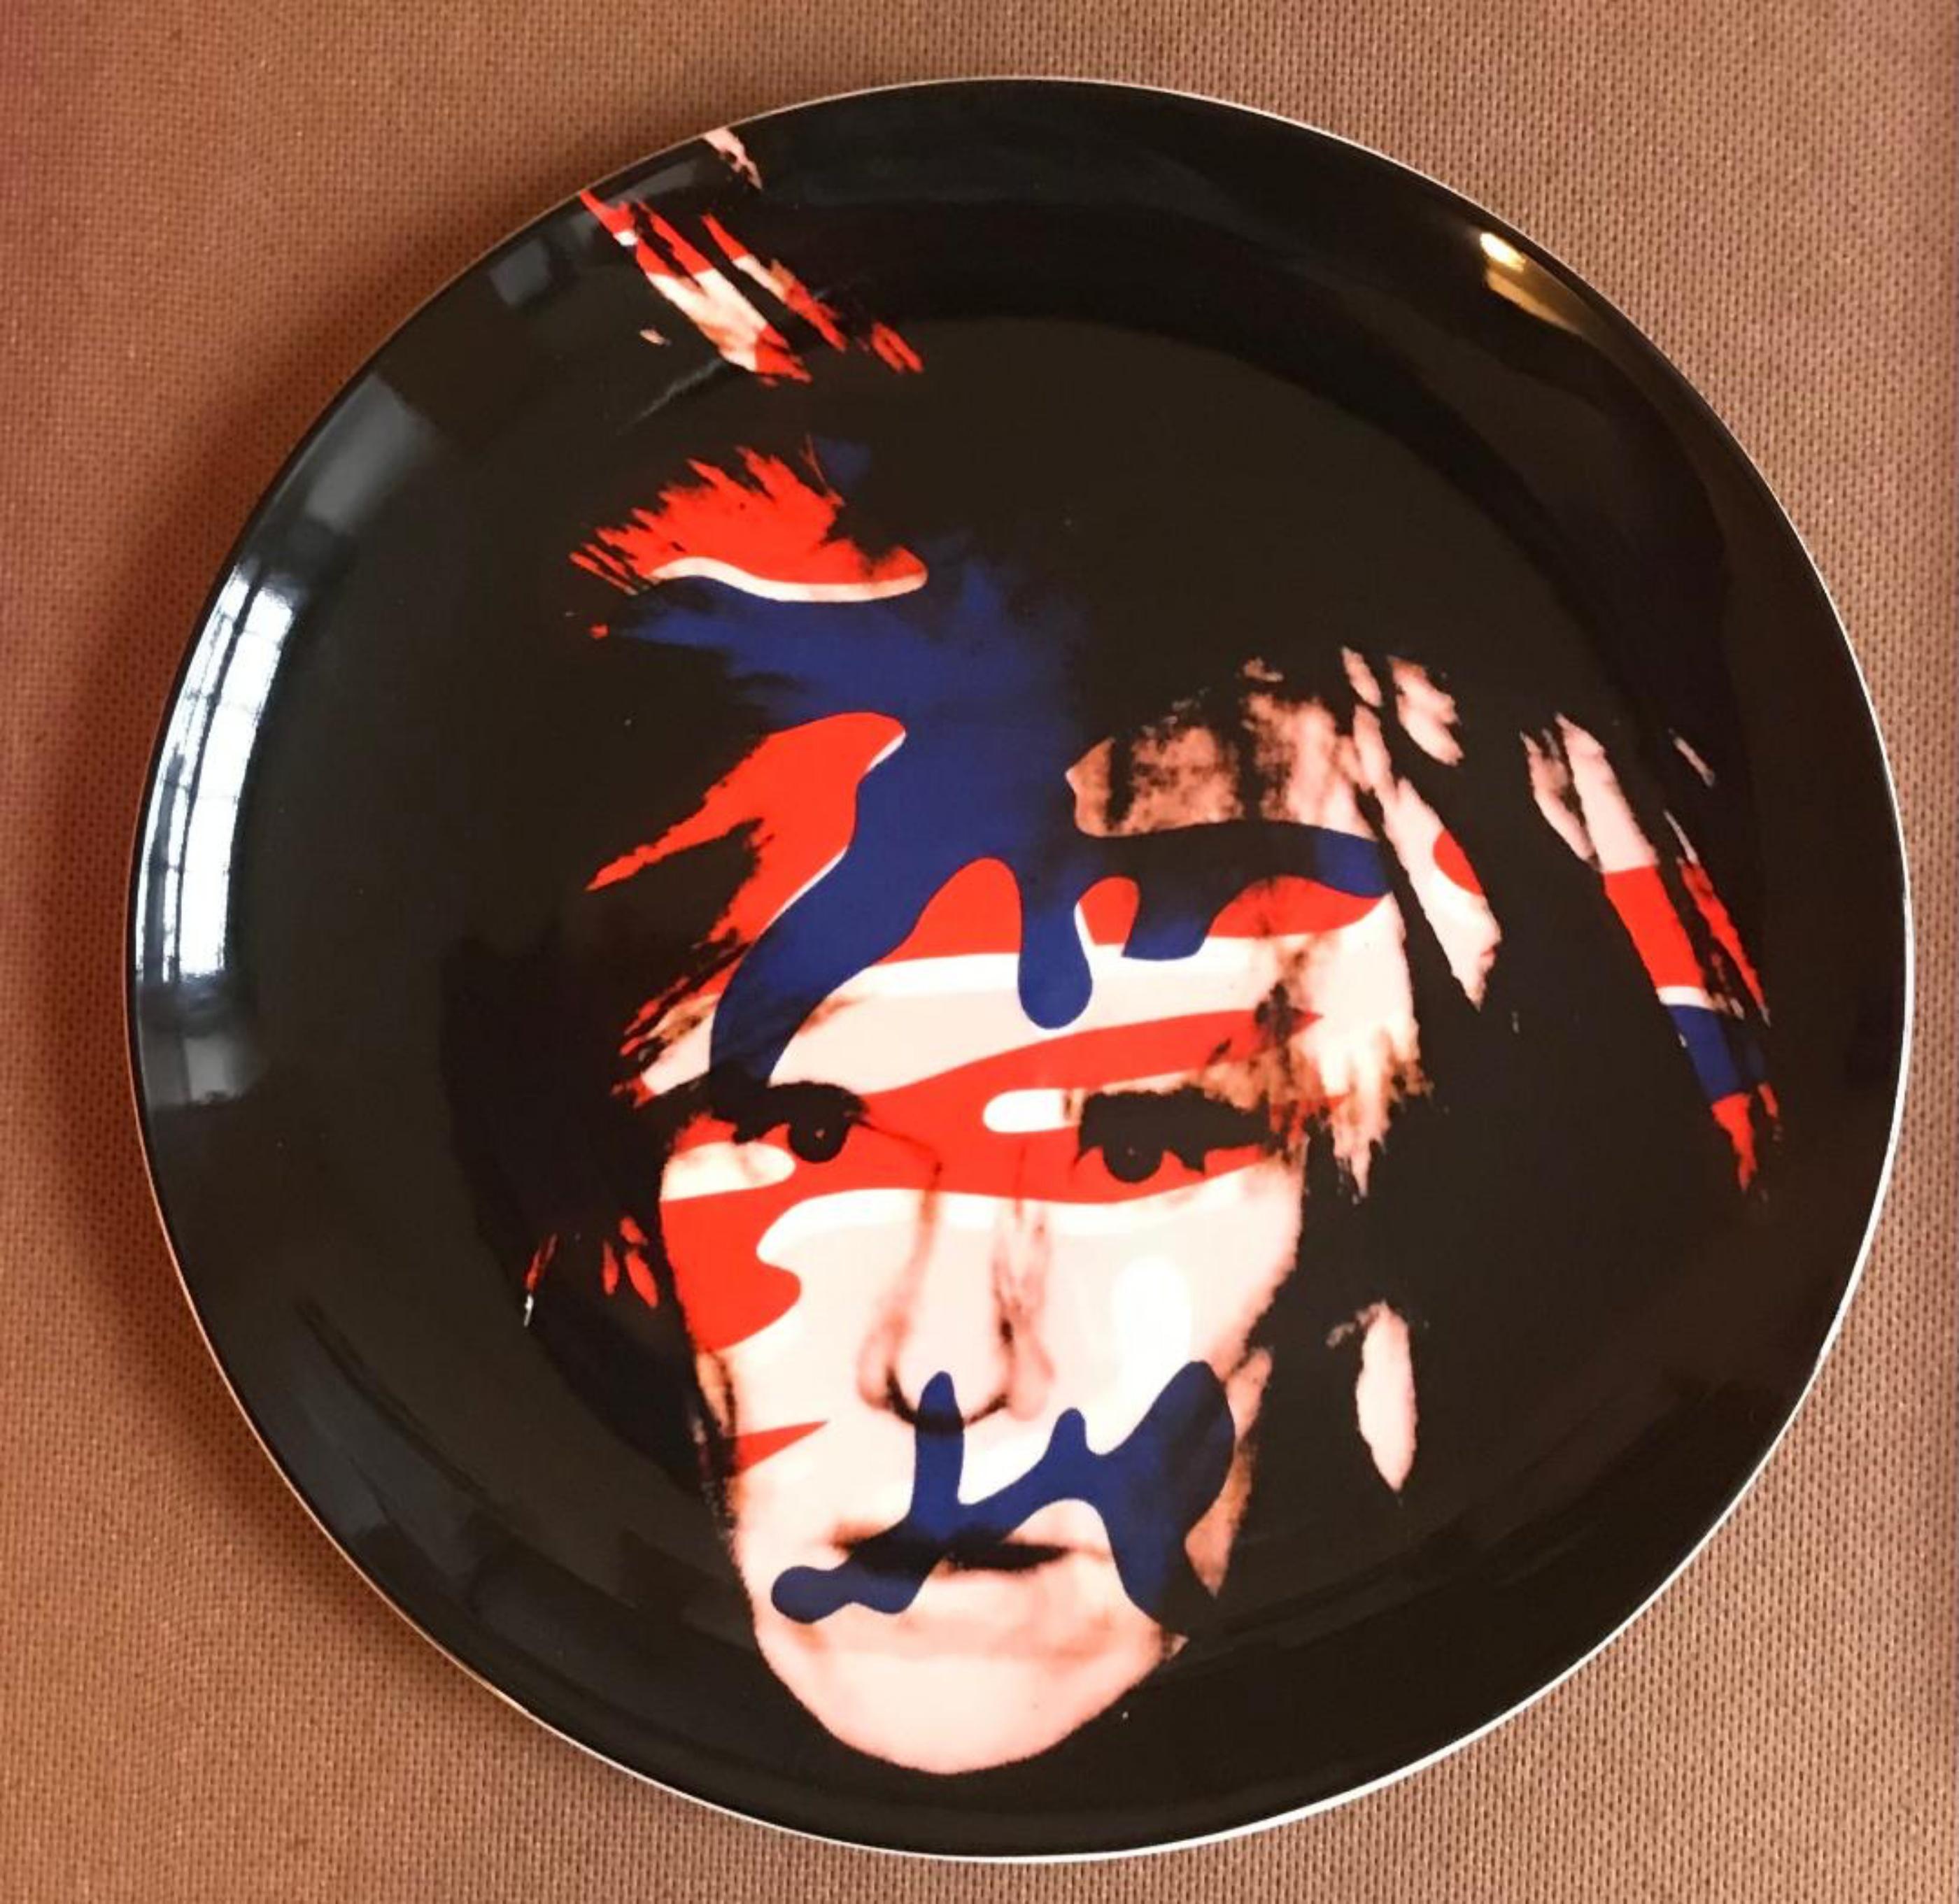 Après Andy Warhol
Self-Portrait en camouflage 1986, 2020
Fine Bone China (Chine à l'os)
10 1/2 × 10 1/2 pouces
Edition de 175
Signé dans la plaque, signature autorisée et détails de l'édition tirés sur la face inférieure. Heldly dans une boîte rouge